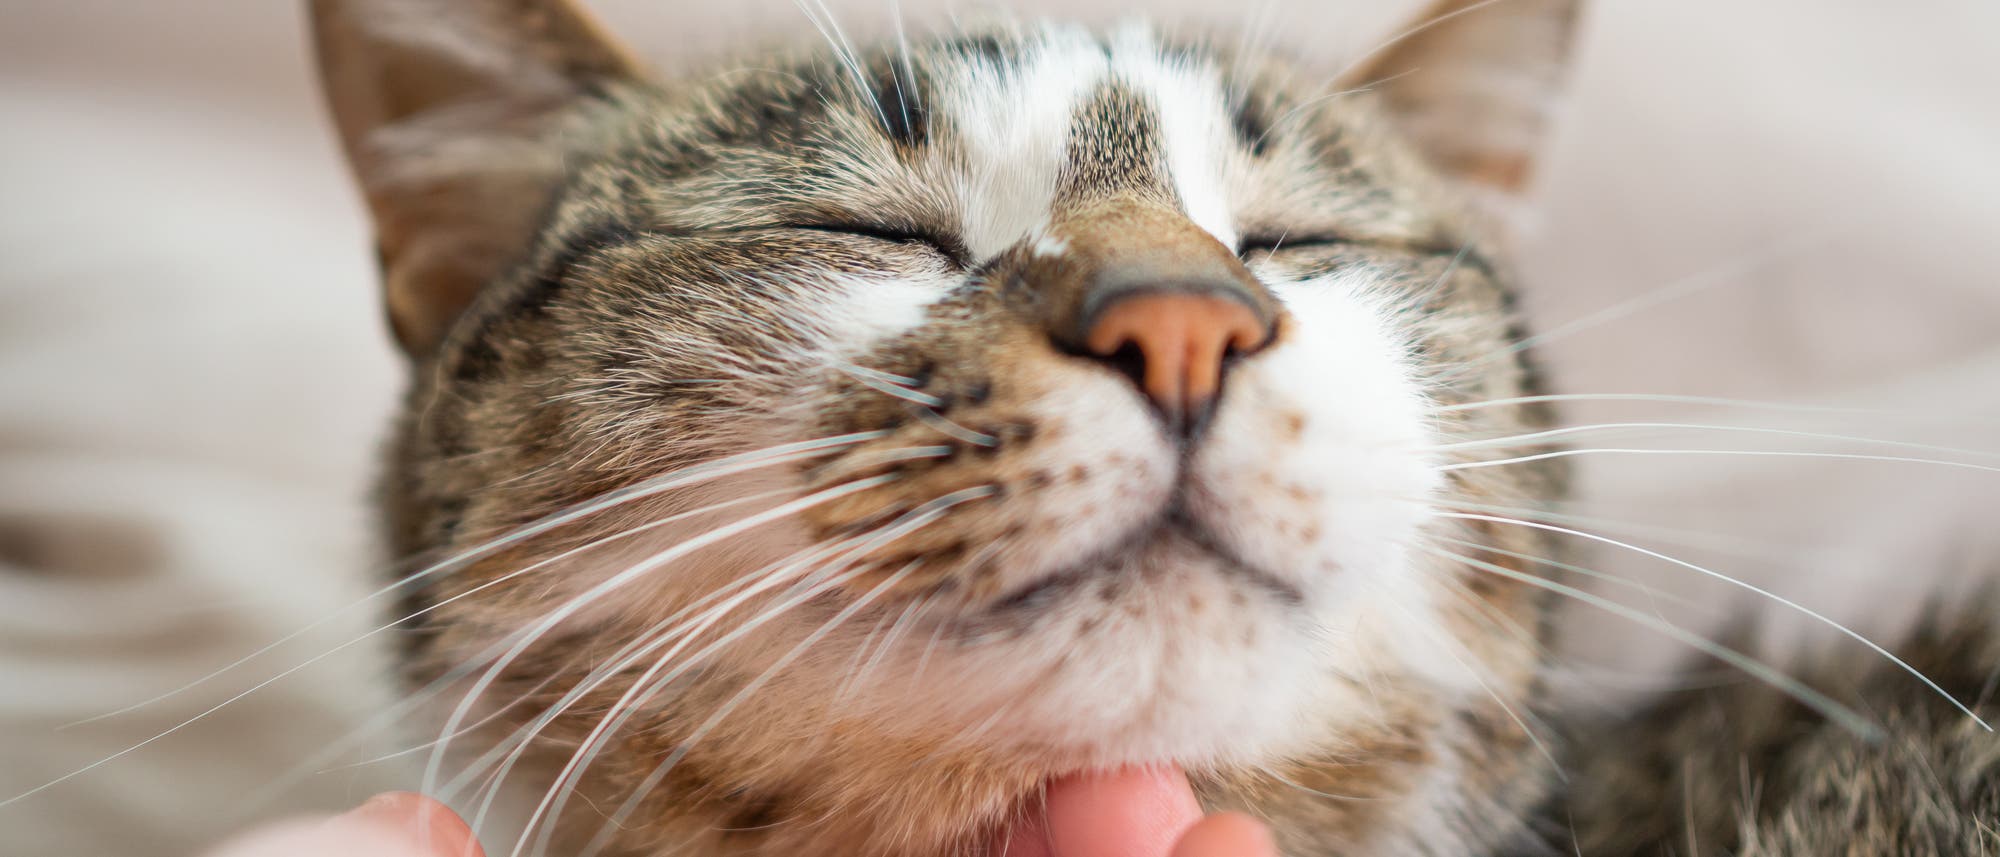 Eine Katze wird am Hals gekrault und schnurrt dabei - sehr wahrscheinlich!